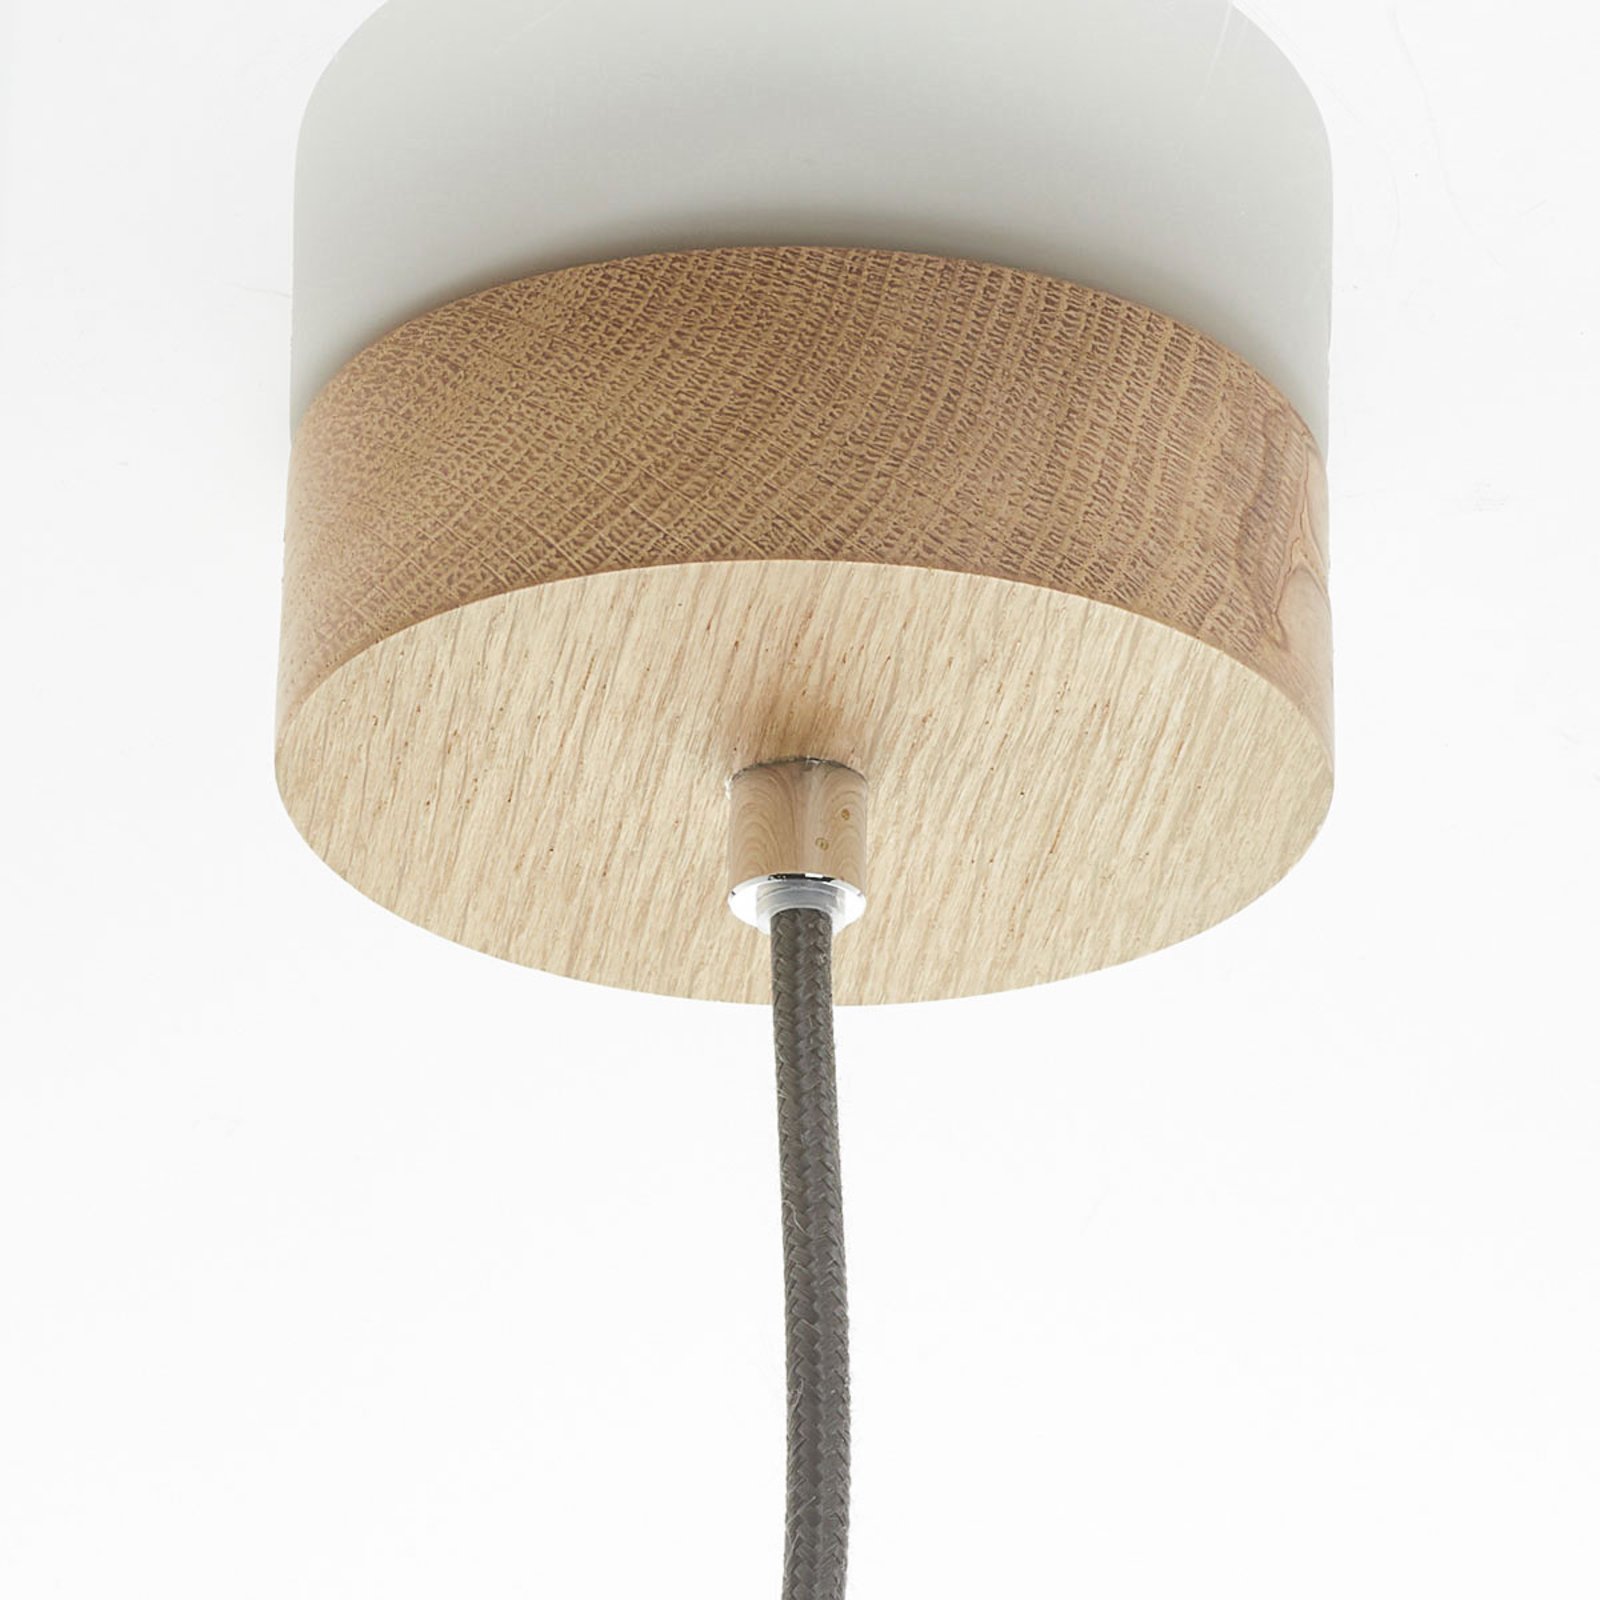 Jednozdrojové LED závěsné světlo Pipe dubové dřevo